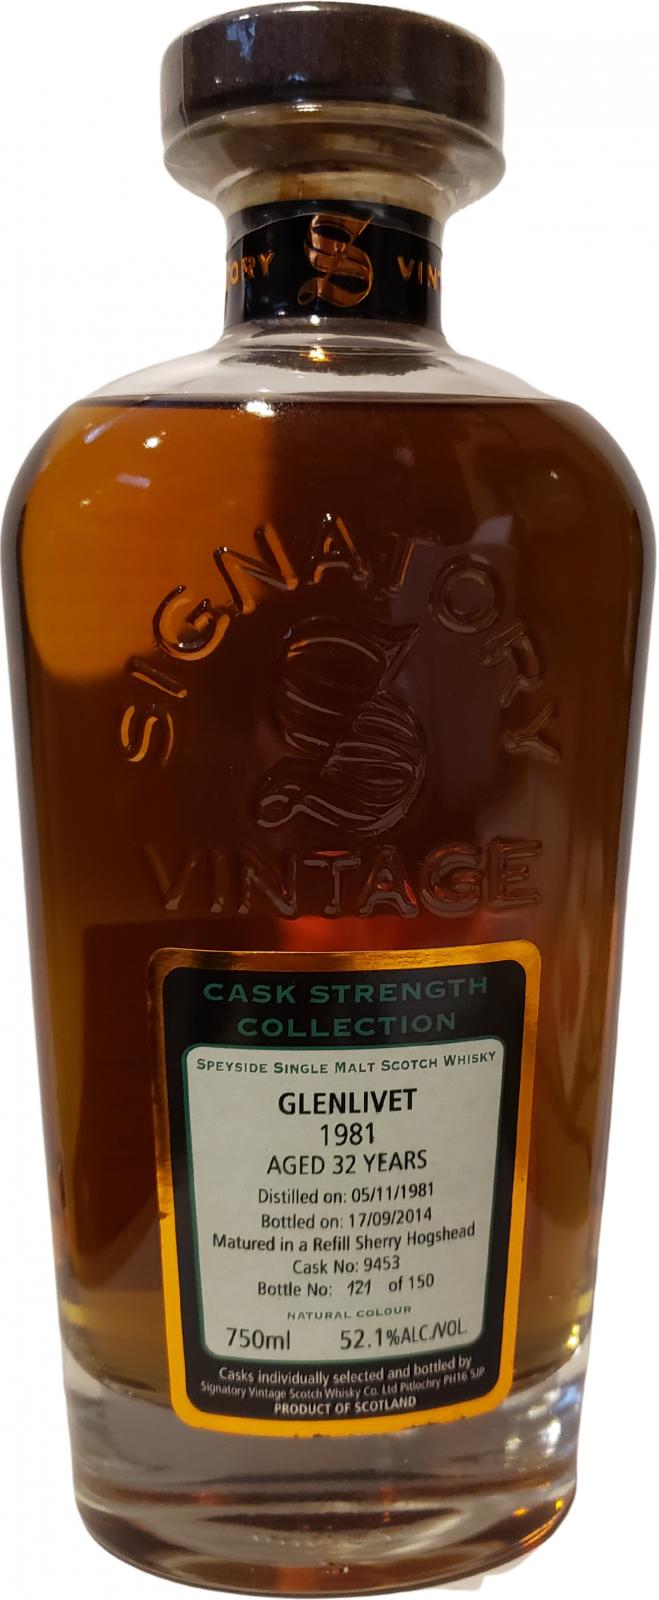 Glenlivet 1981 SV Cask Strength Collection Refill Sherry Hogshead 9453 52.1% 750ml